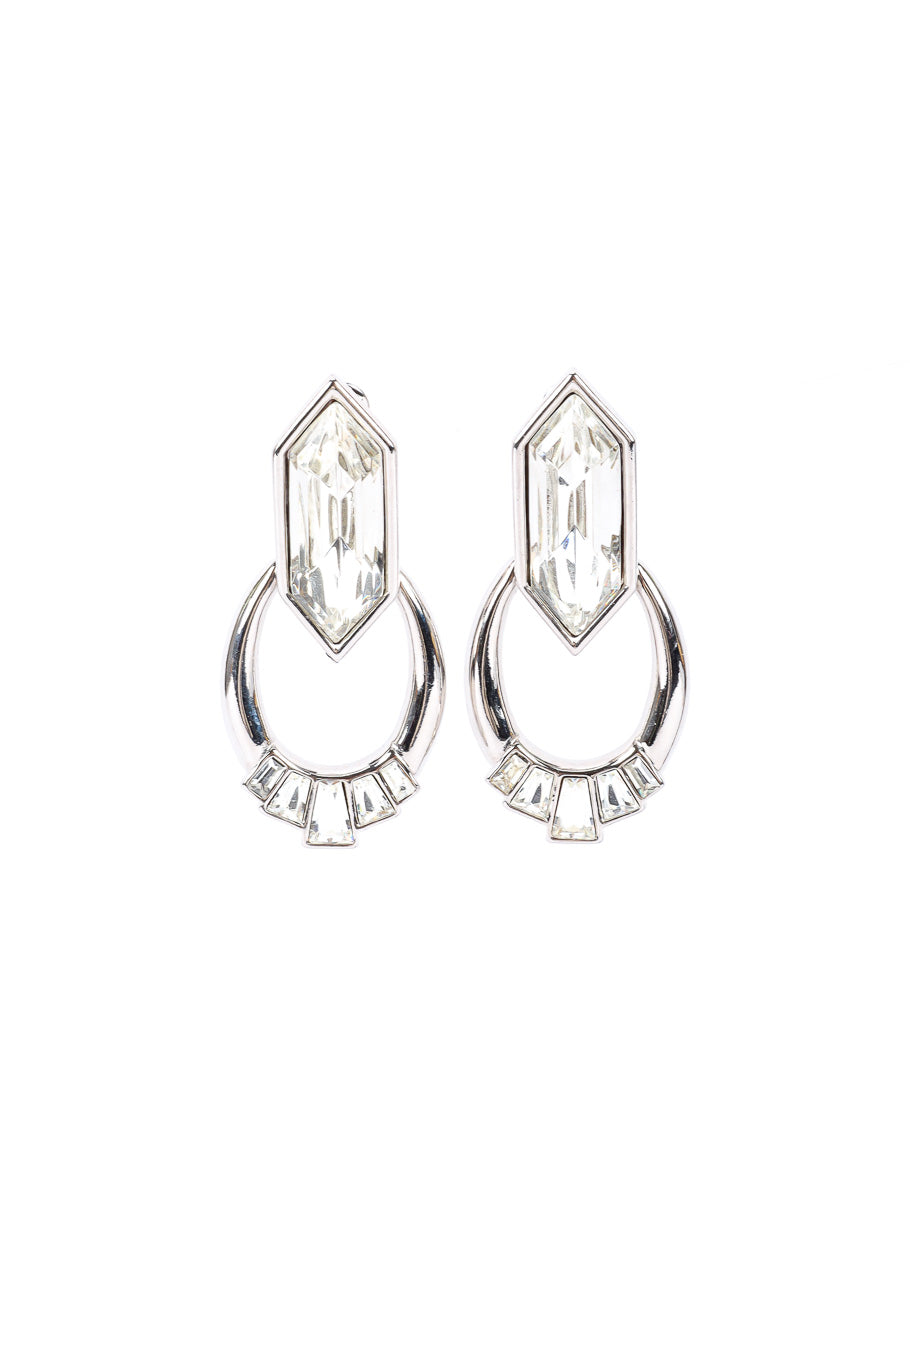 Vintage Yves Saint Laurent Crystal Rhinestone Drop Earrings front view @Recessla